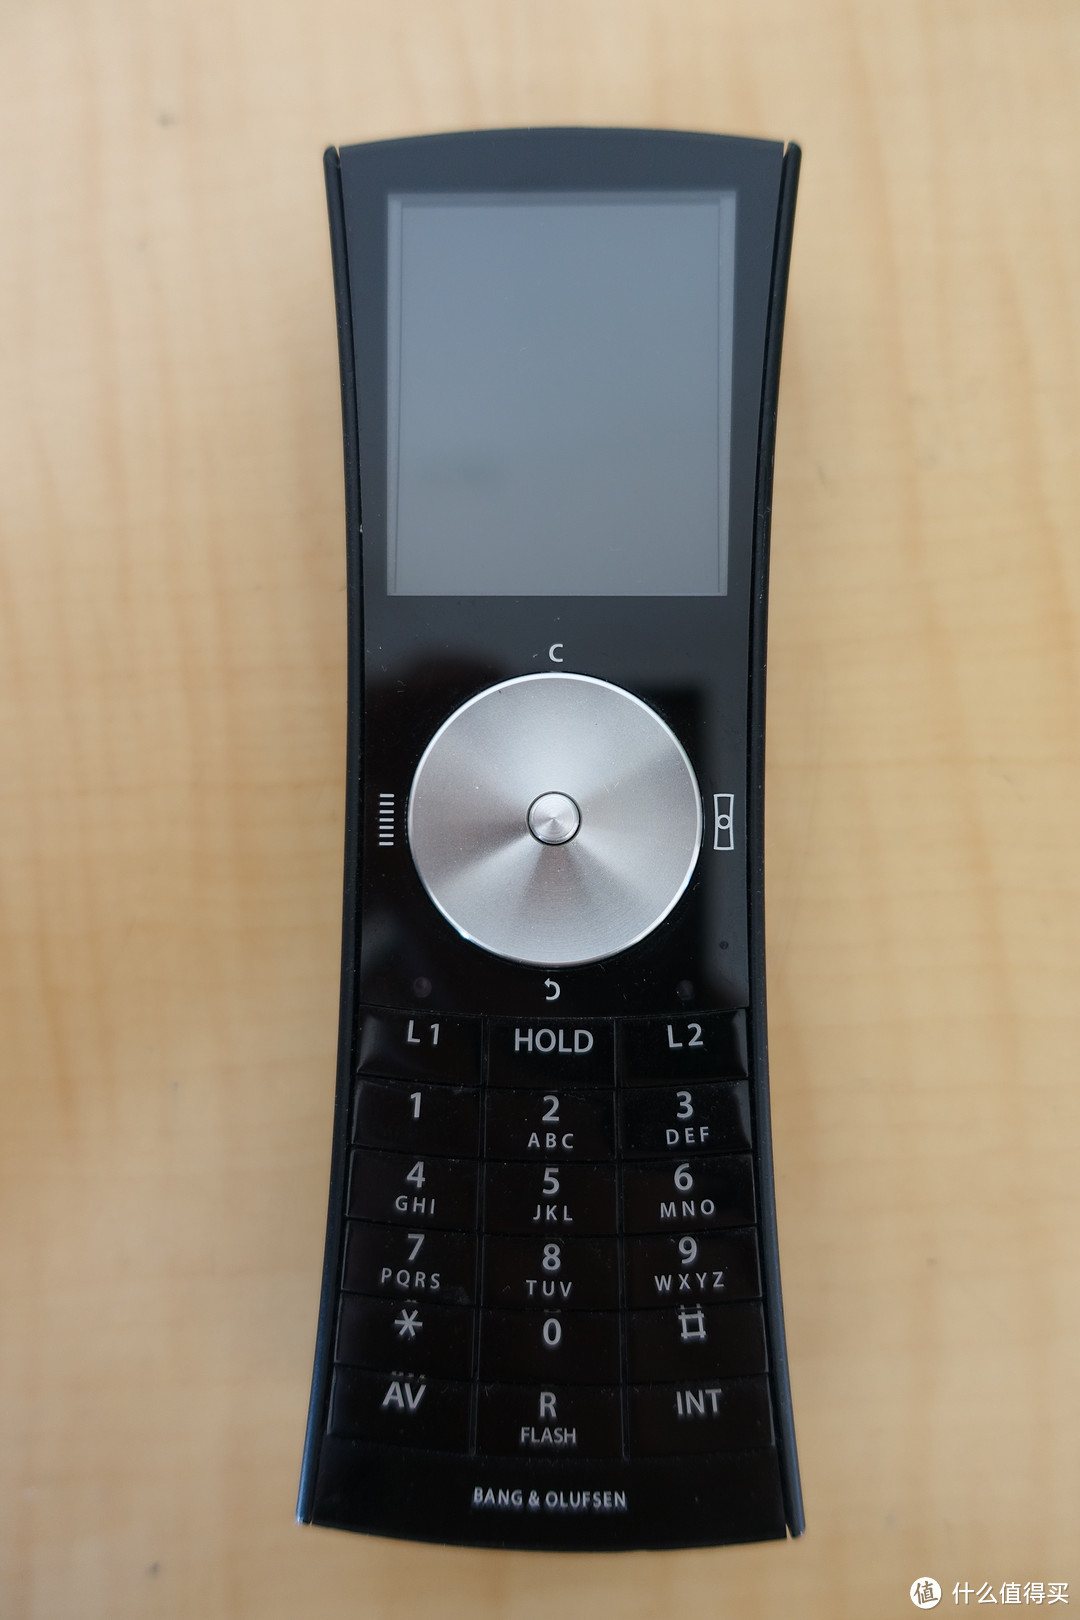 说说B&O的老产品：Beocom 5 电话机